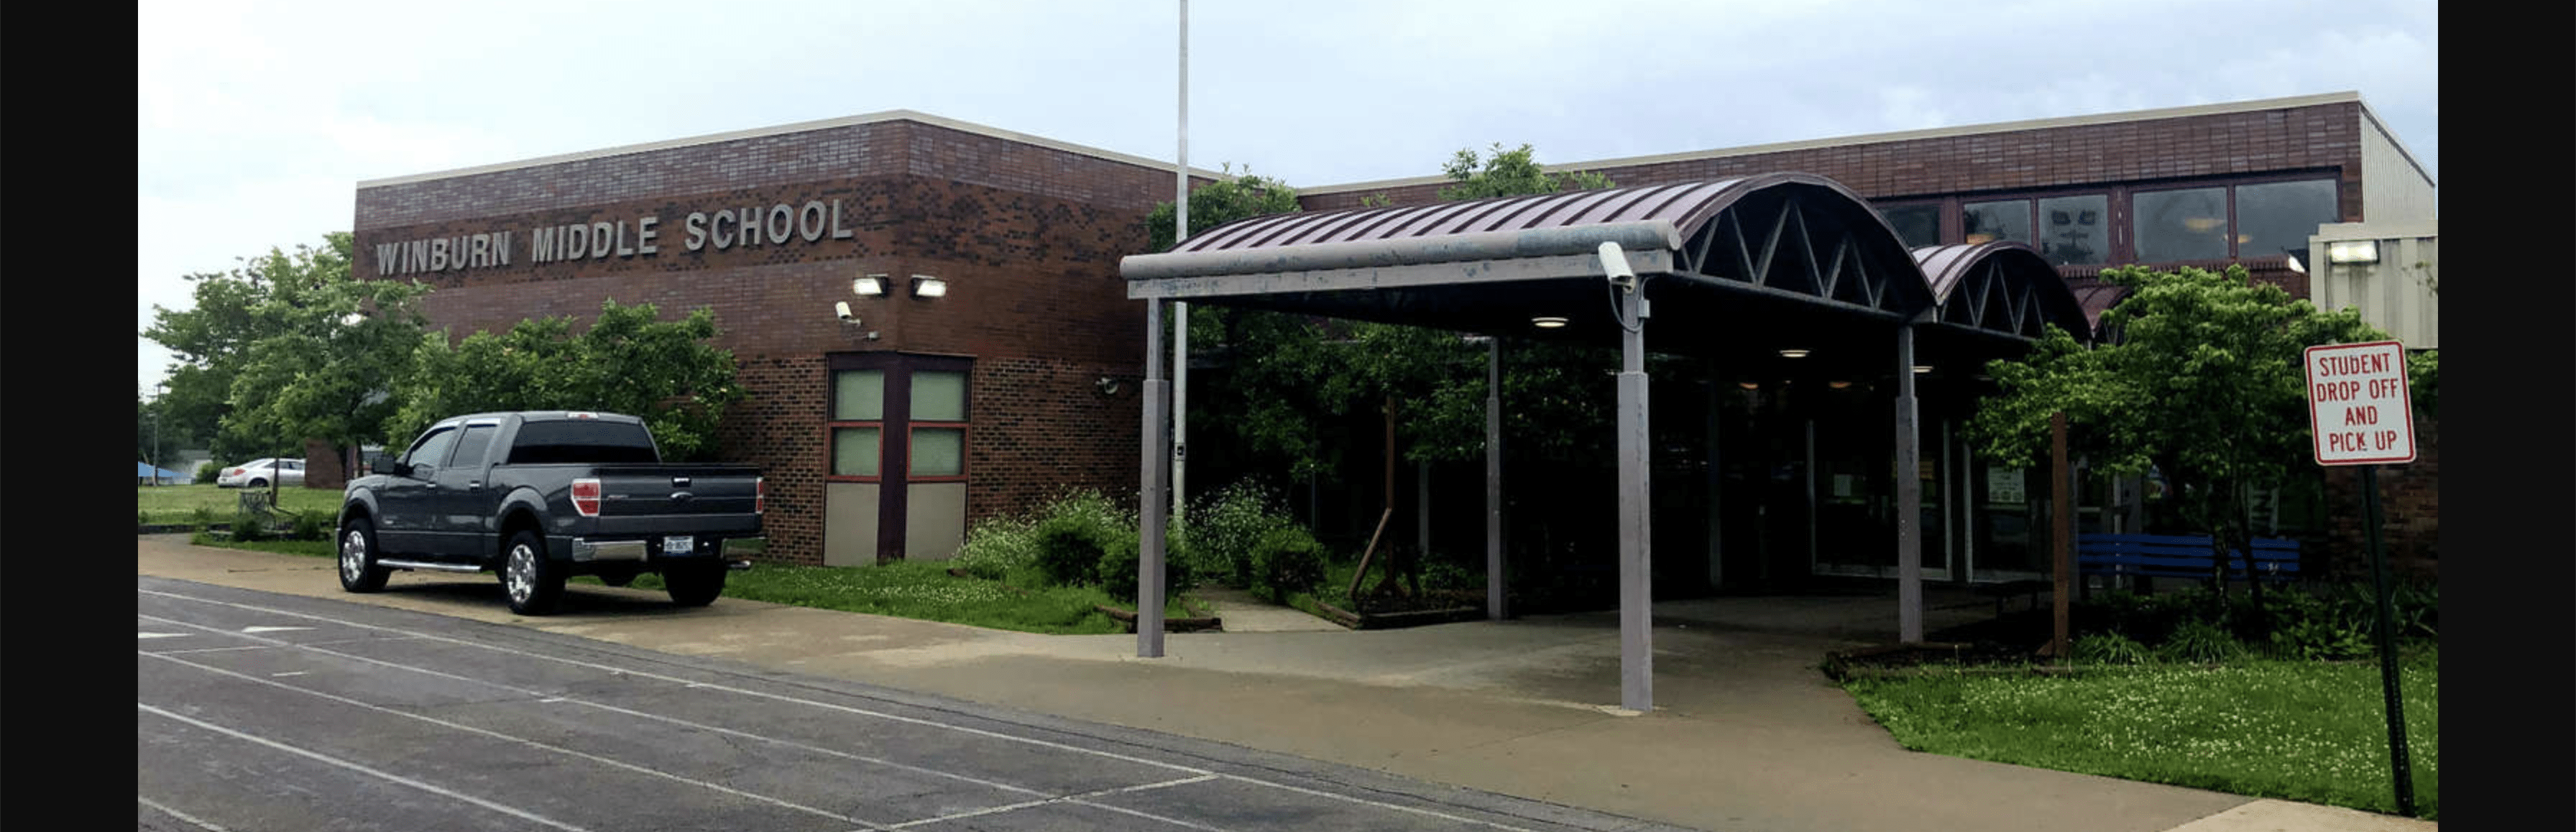 Social media "prank" sparks false concerns of violence at Fayette County school